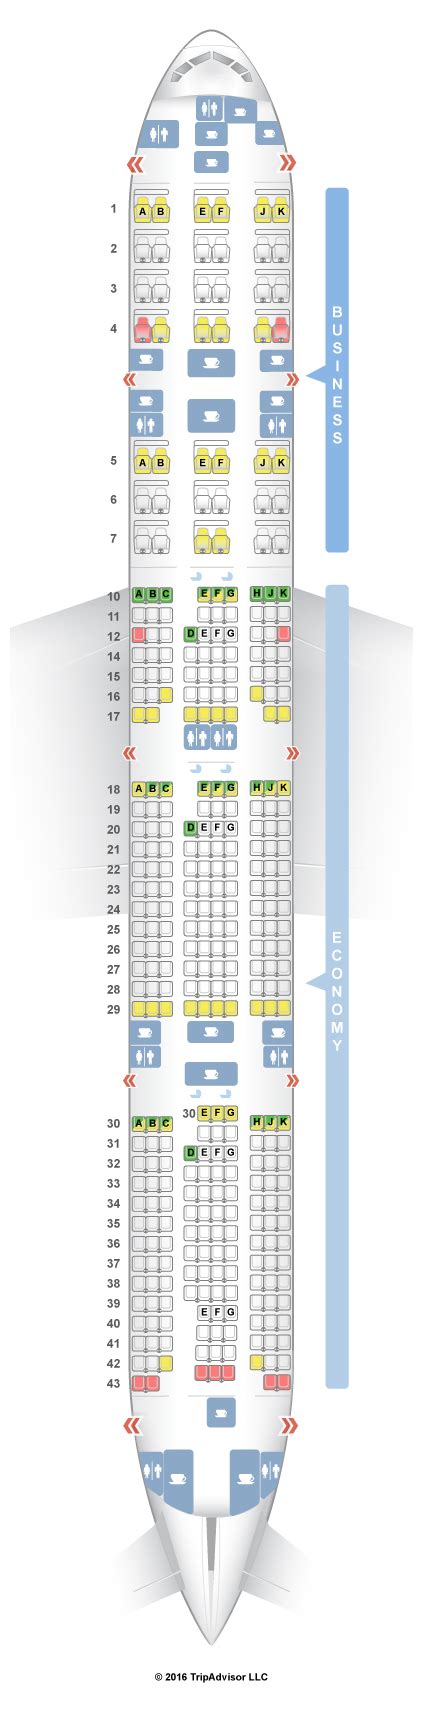 qatar boeing 777-300er jet seat map